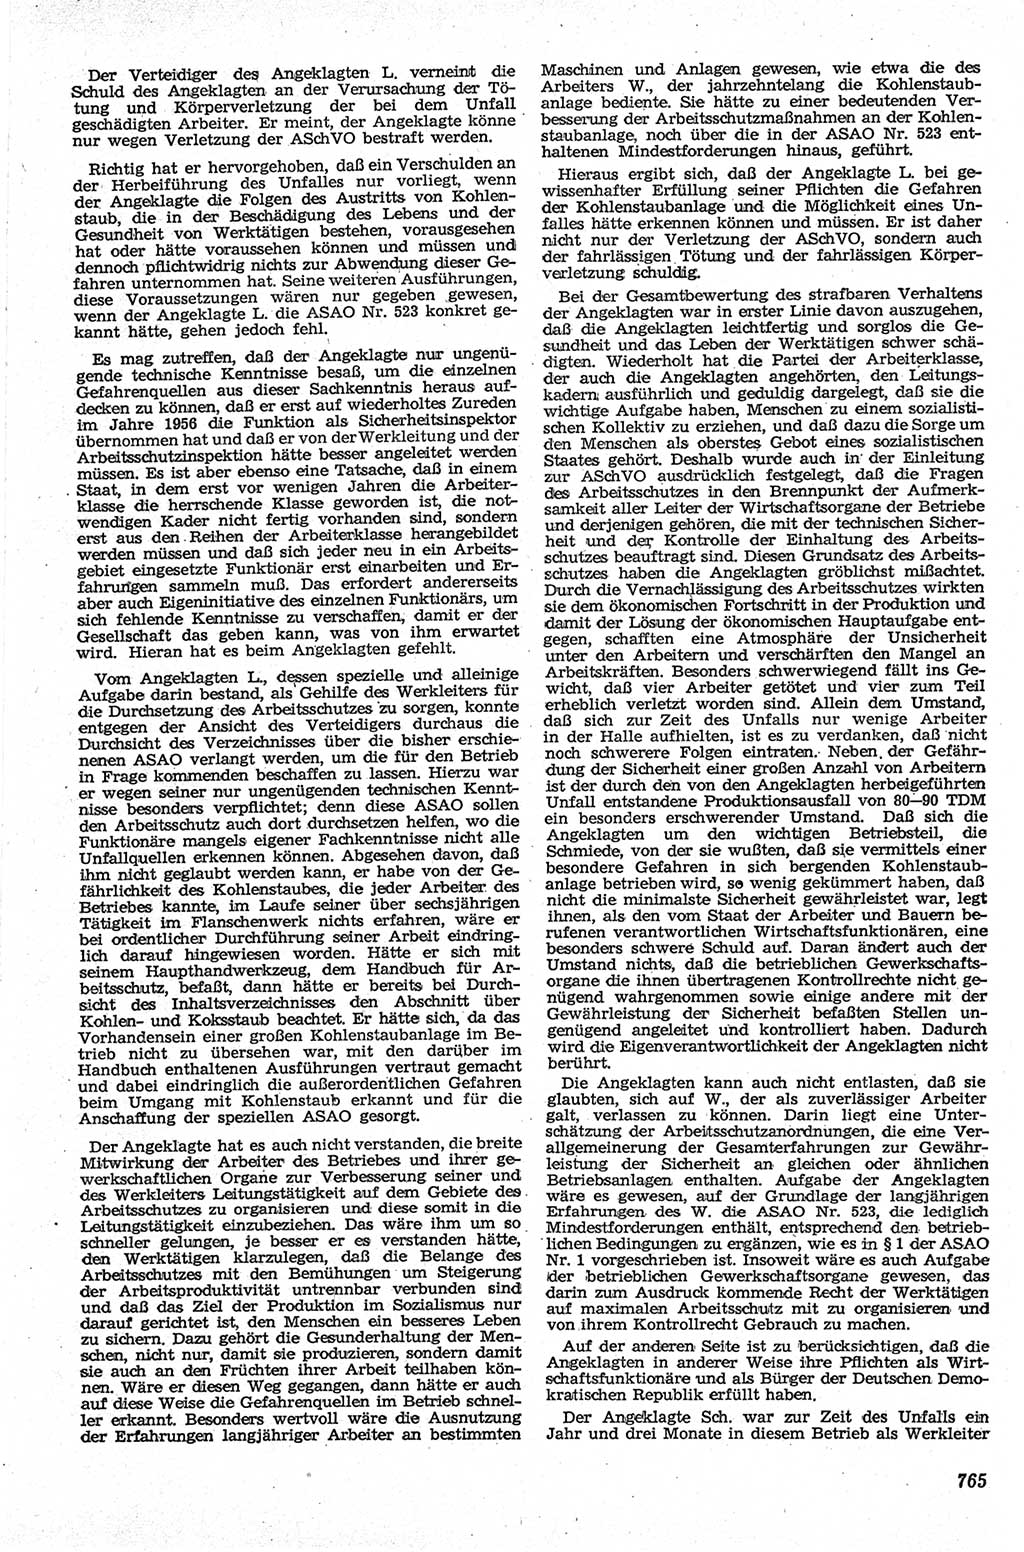 Neue Justiz (NJ), Zeitschrift für Recht und Rechtswissenschaft [Deutsche Demokratische Republik (DDR)], 13. Jahrgang 1959, Seite 765 (NJ DDR 1959, S. 765)